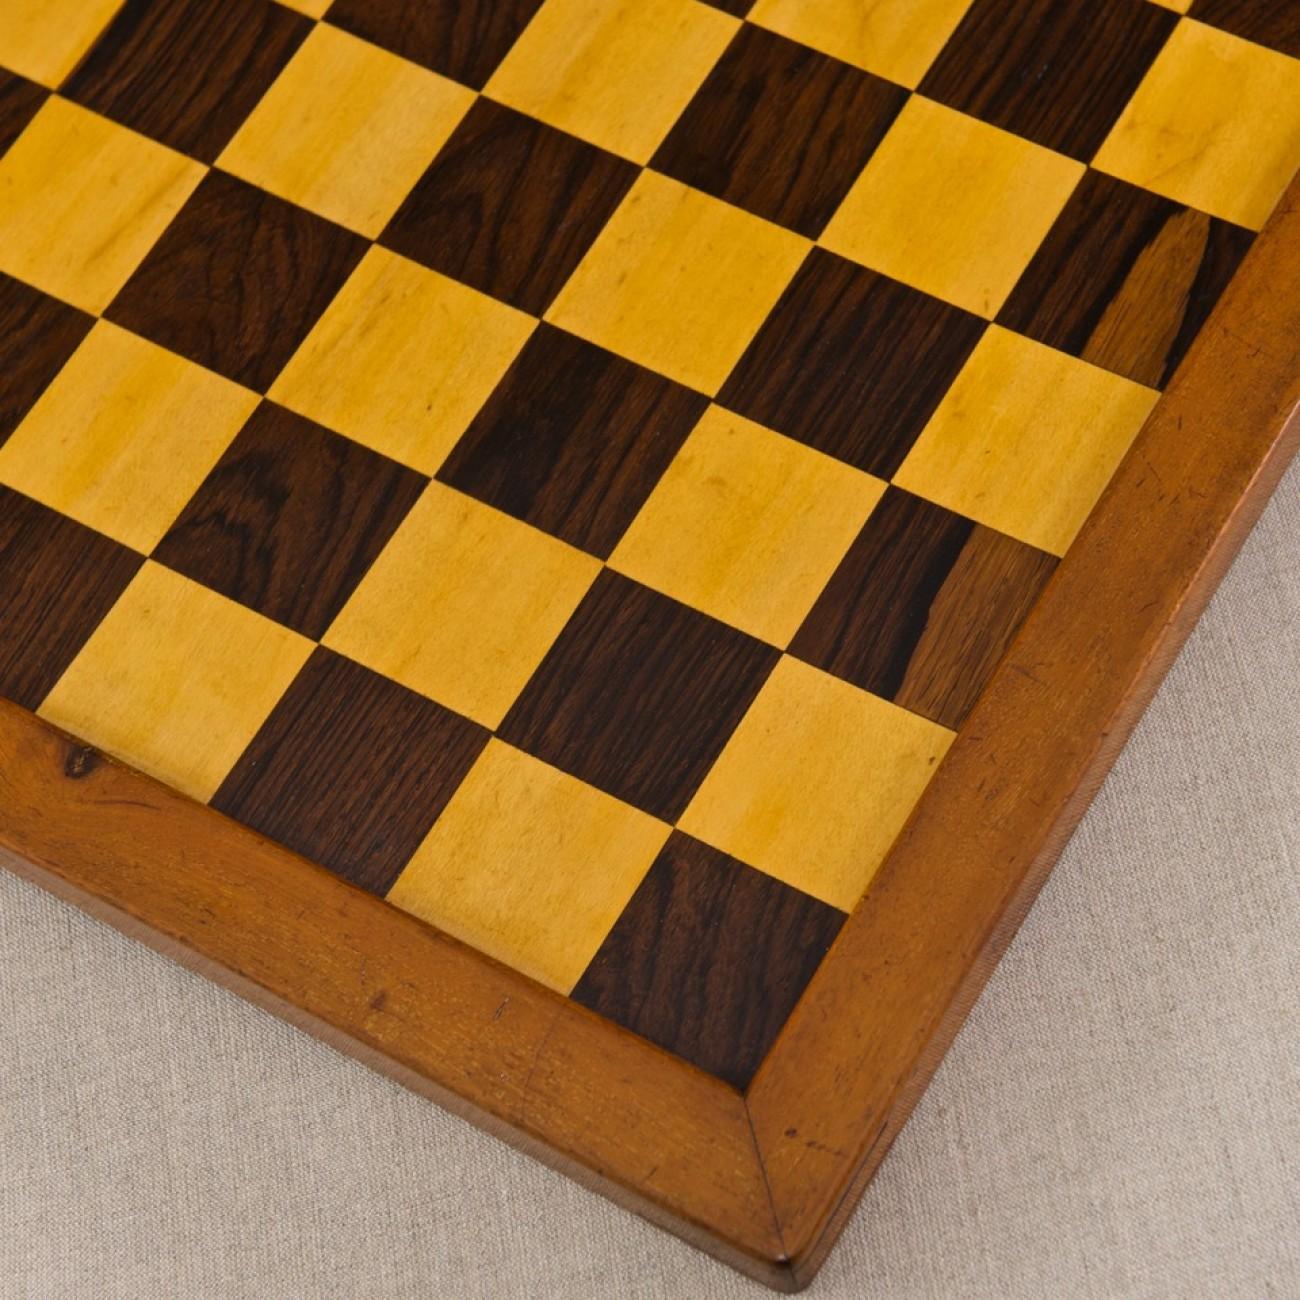 Mahogany Small Satinwood and Rosewood Chess Board, circa 1920